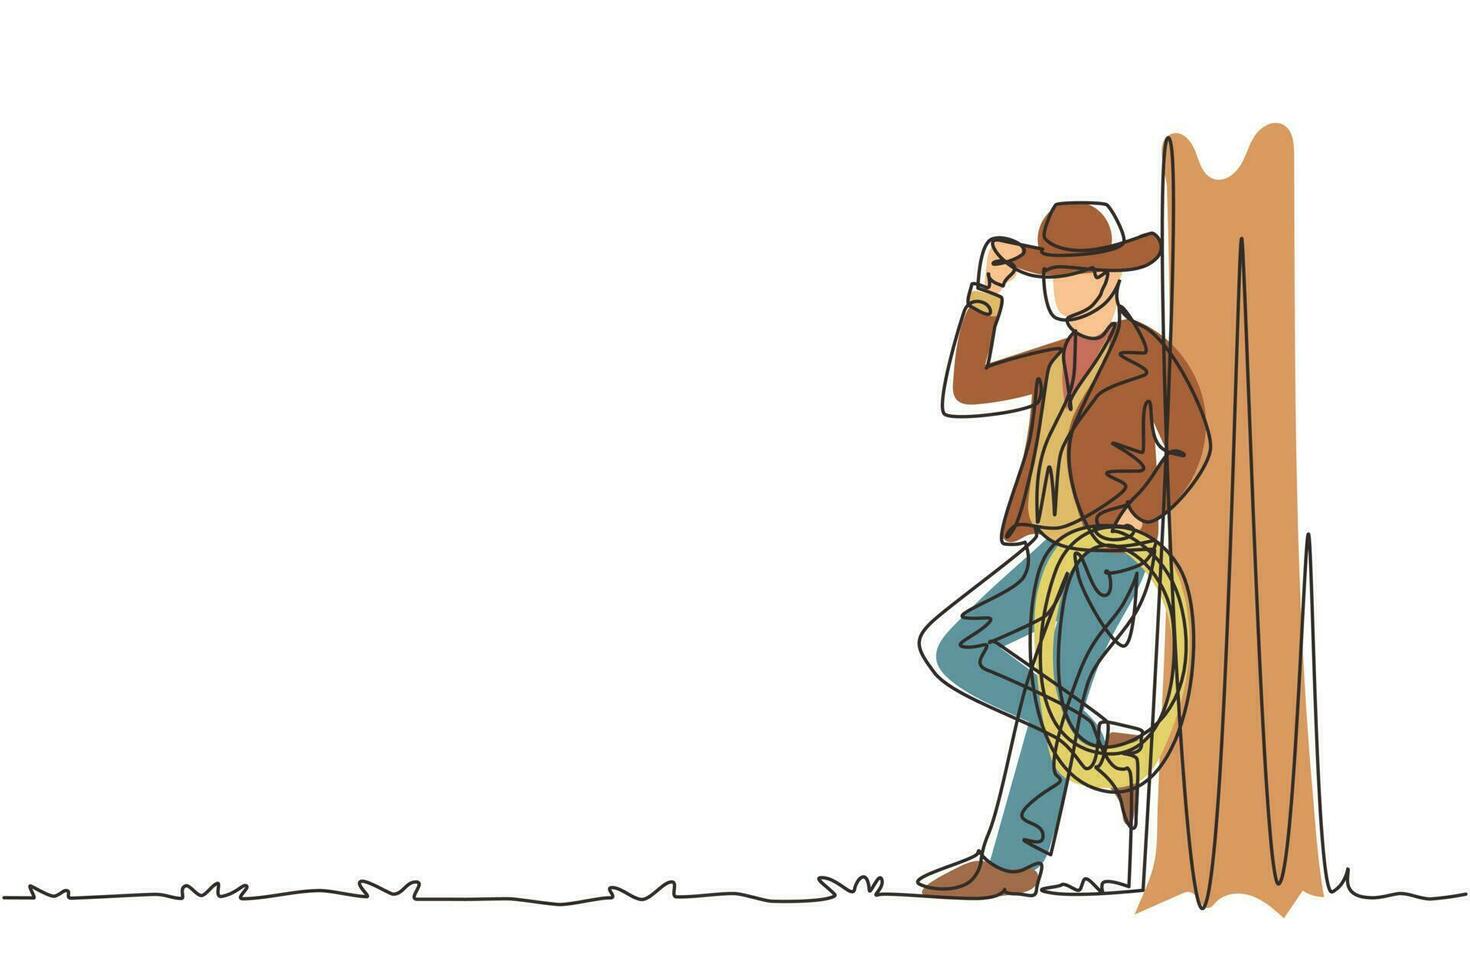 enkele een lijntekening westerse ontspannen man met cowboyhoed en lasso. Amerikaanse cowboylevensstijl bij veepaard in de avond. moderne doorlopende lijn tekenen ontwerp grafische vectorillustratie vector